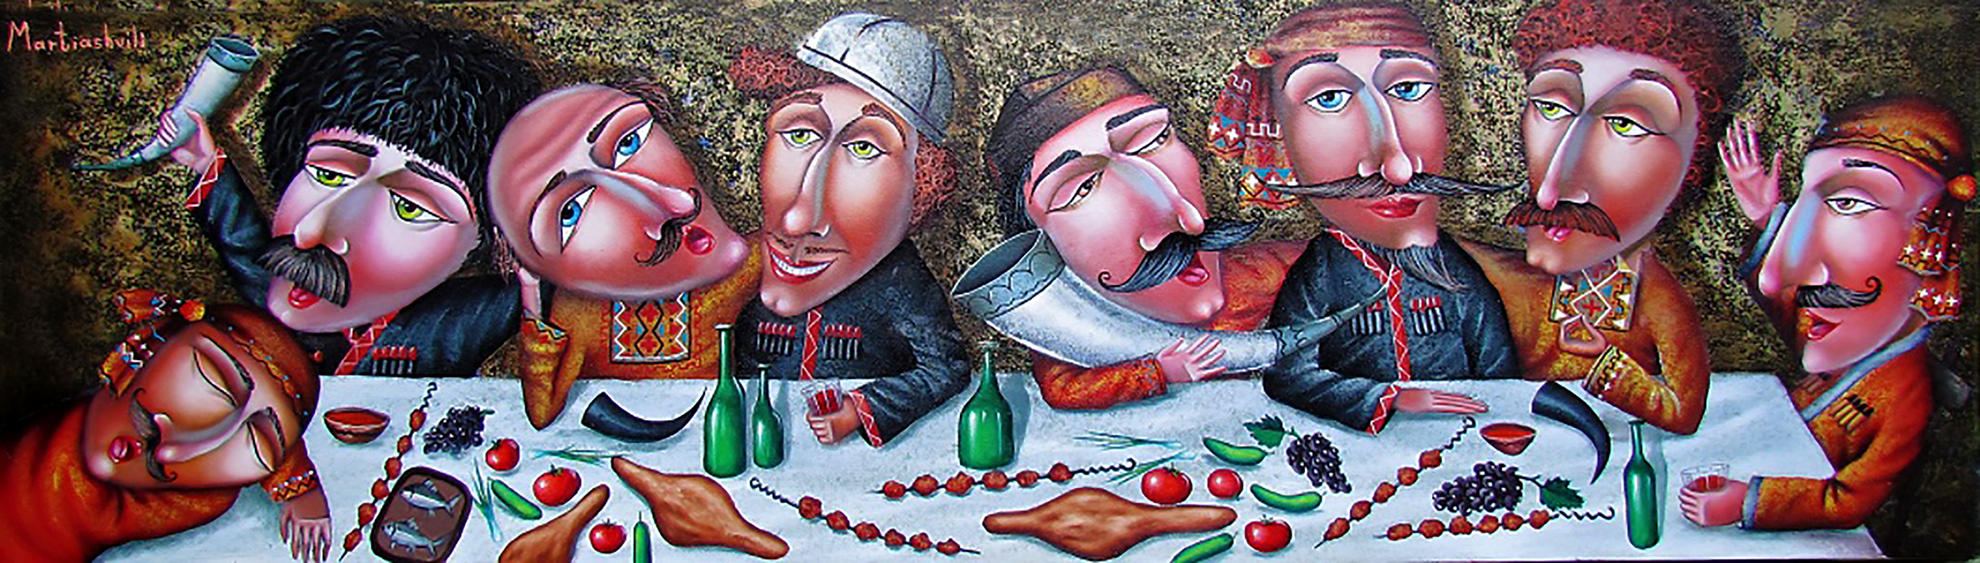 Зураб Мартиашвили картины грузины